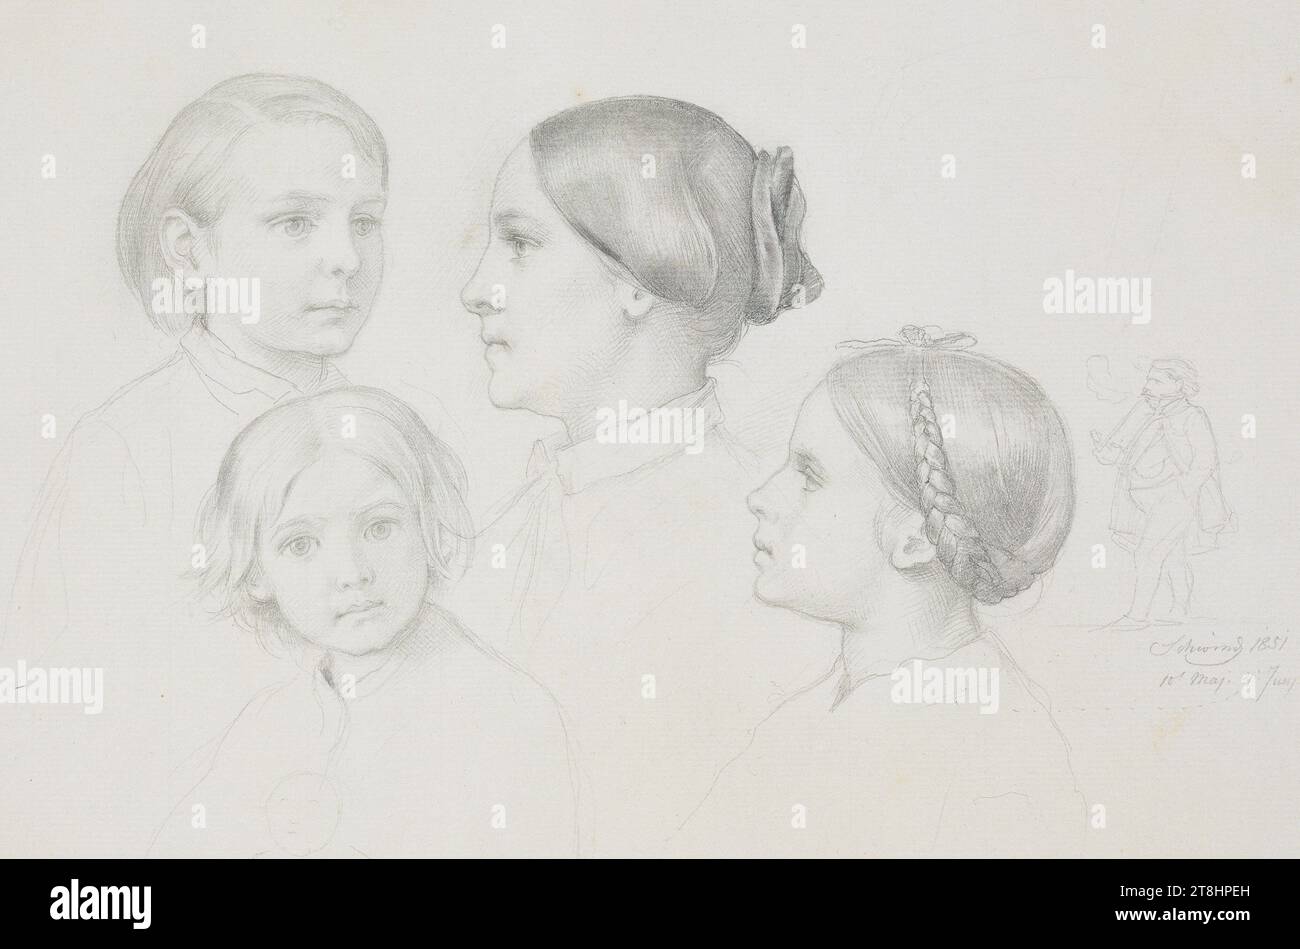 MORITZ VON SCHWIND, la famille de l'artiste, à droite un autoportrait, 10 mai 1851 - 4 juin 1851, feuille, 268 x 339 mm, crayon, partiellement essuyé, bordure au crayon sur tous les côtés, sur papier chamois fait main, la famille de l'artiste, à droite un autoportrait, MORITZ VON SCHWIND, MUNICH, 19E SIÈCLE, DESSIN, crayon, partiellement essuyé, ligne de bordure avec crayon de tous les côtés, sur papier fait à la main couleur chamois, MÉLANGE GRAPHITE-ARGILE, papier fait à la main, dessin au crayon, autrichien, Etude de portrait, signée et datée au milieu à droite, avec crayon, Schwind 1851 / 10 mai. 4 juin, timbre en bas à gauche de Banque D'Images